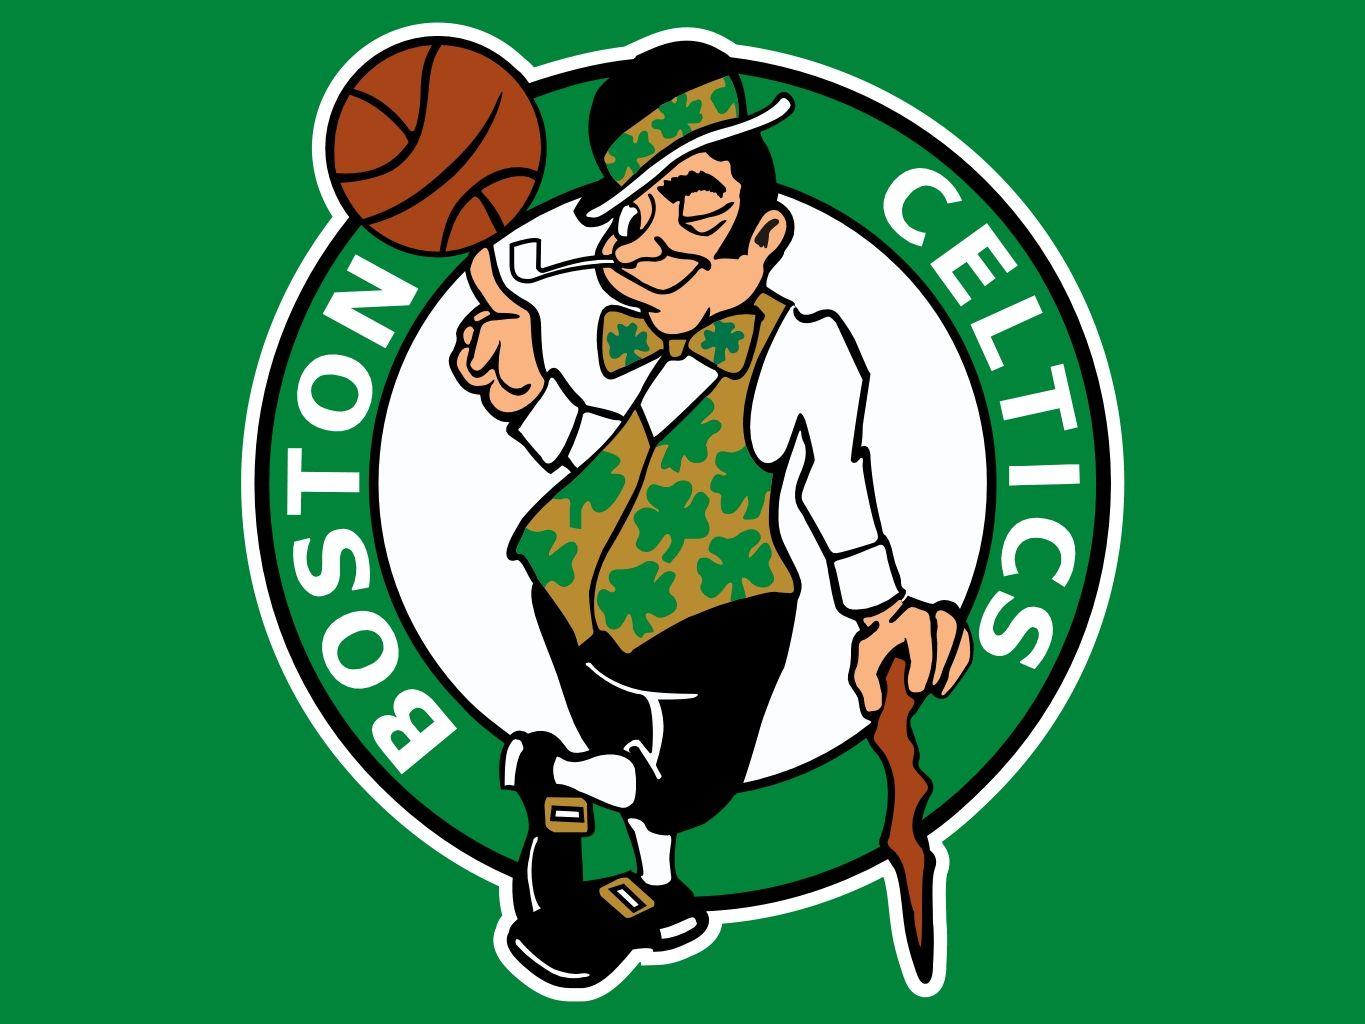 Boston NBA Logo - Boston's leprechaun comes in at No. 6 in Grantland's Definitive NBA